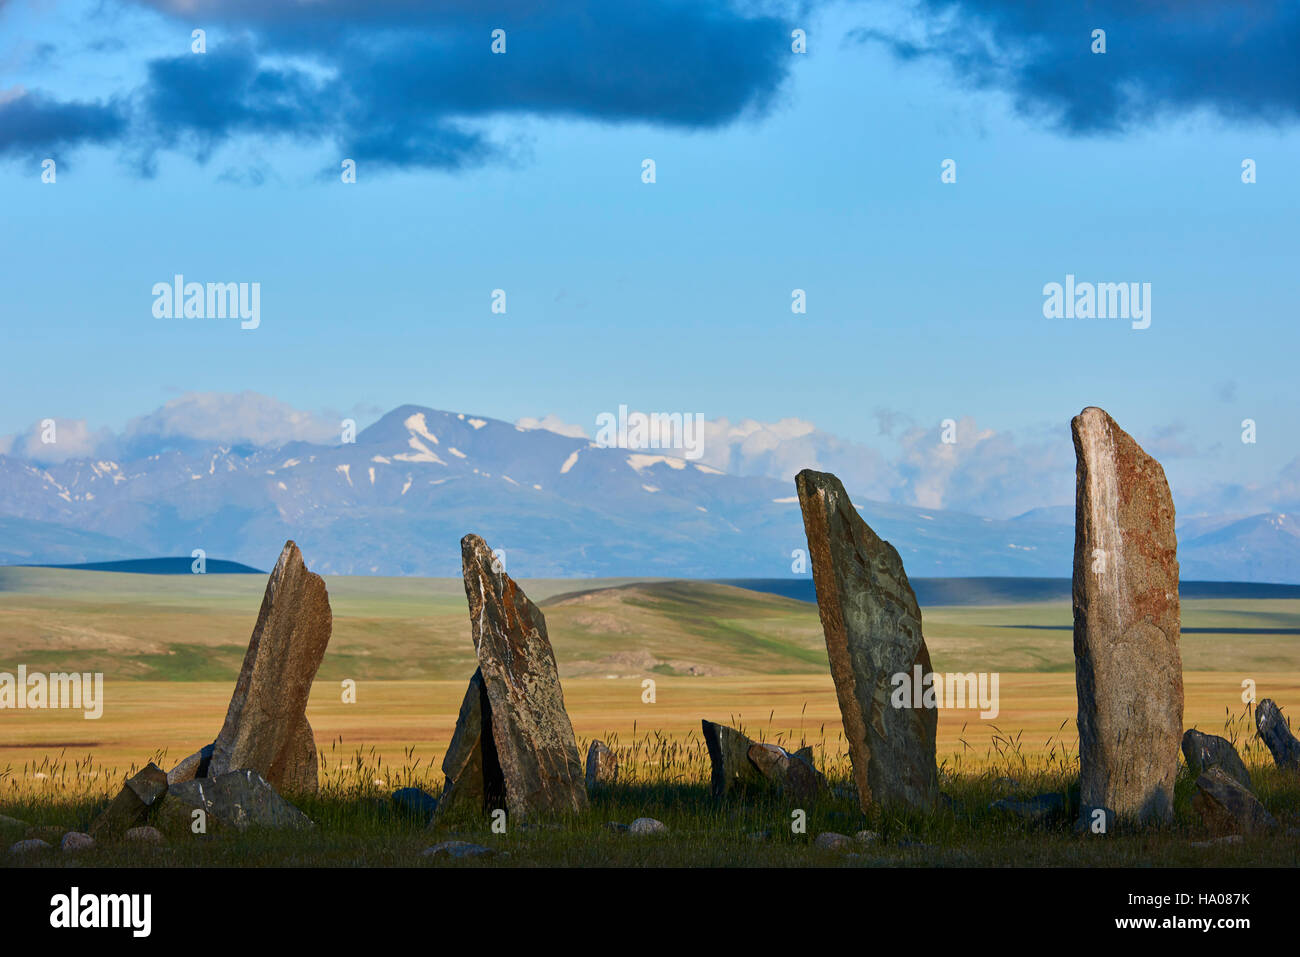 Mongolia, Bayan-Ulgii provincia, oeste de Mongolia, parque nacional de Tavan Bogd, ciervos, piedra sitio funerario, monumento monolítico Foto de stock